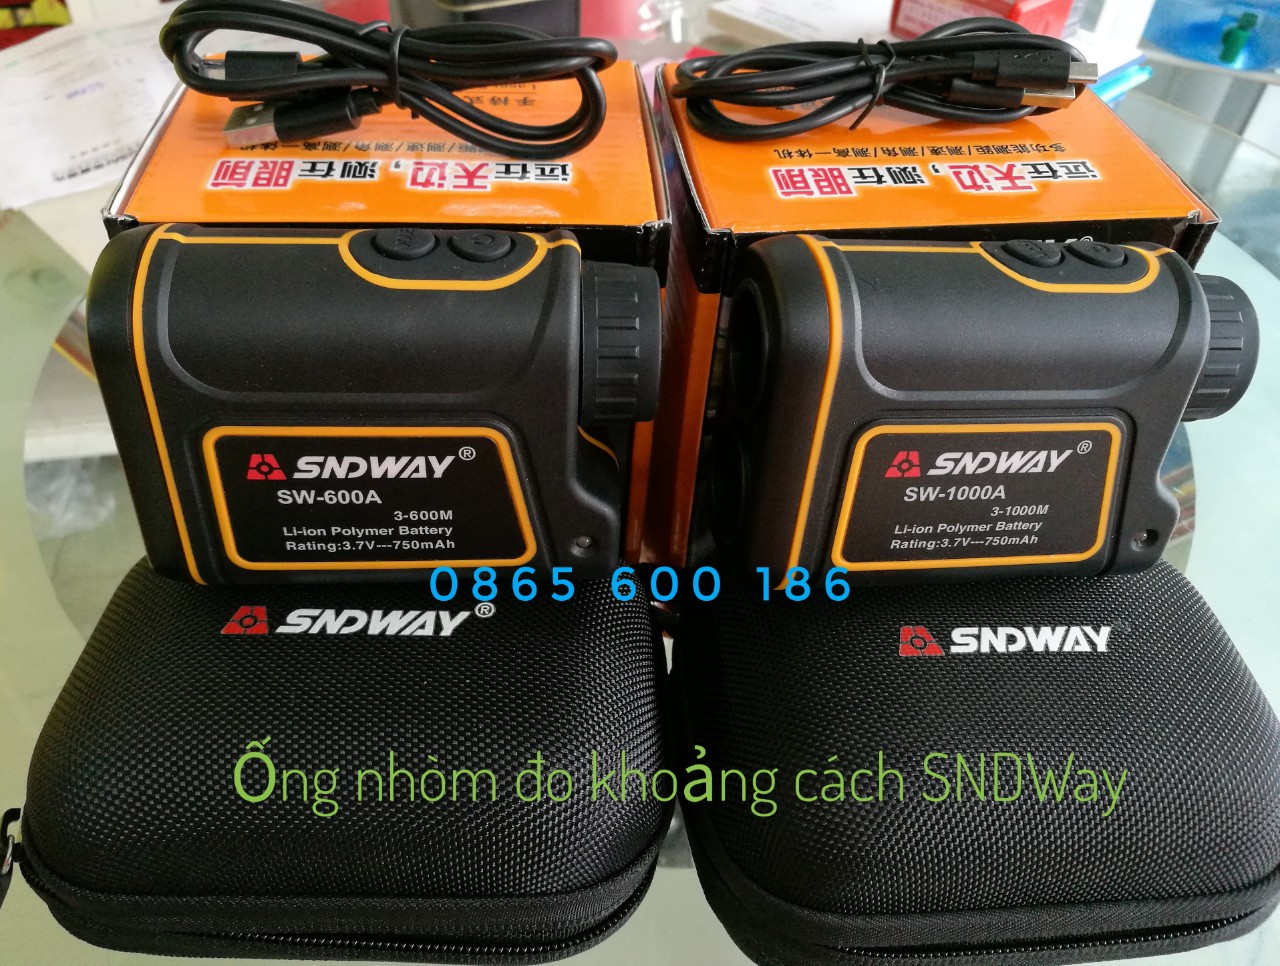 ỐNG NHÒM ĐO KHOẢNG CÁCH SNDWAY SW - 1000A